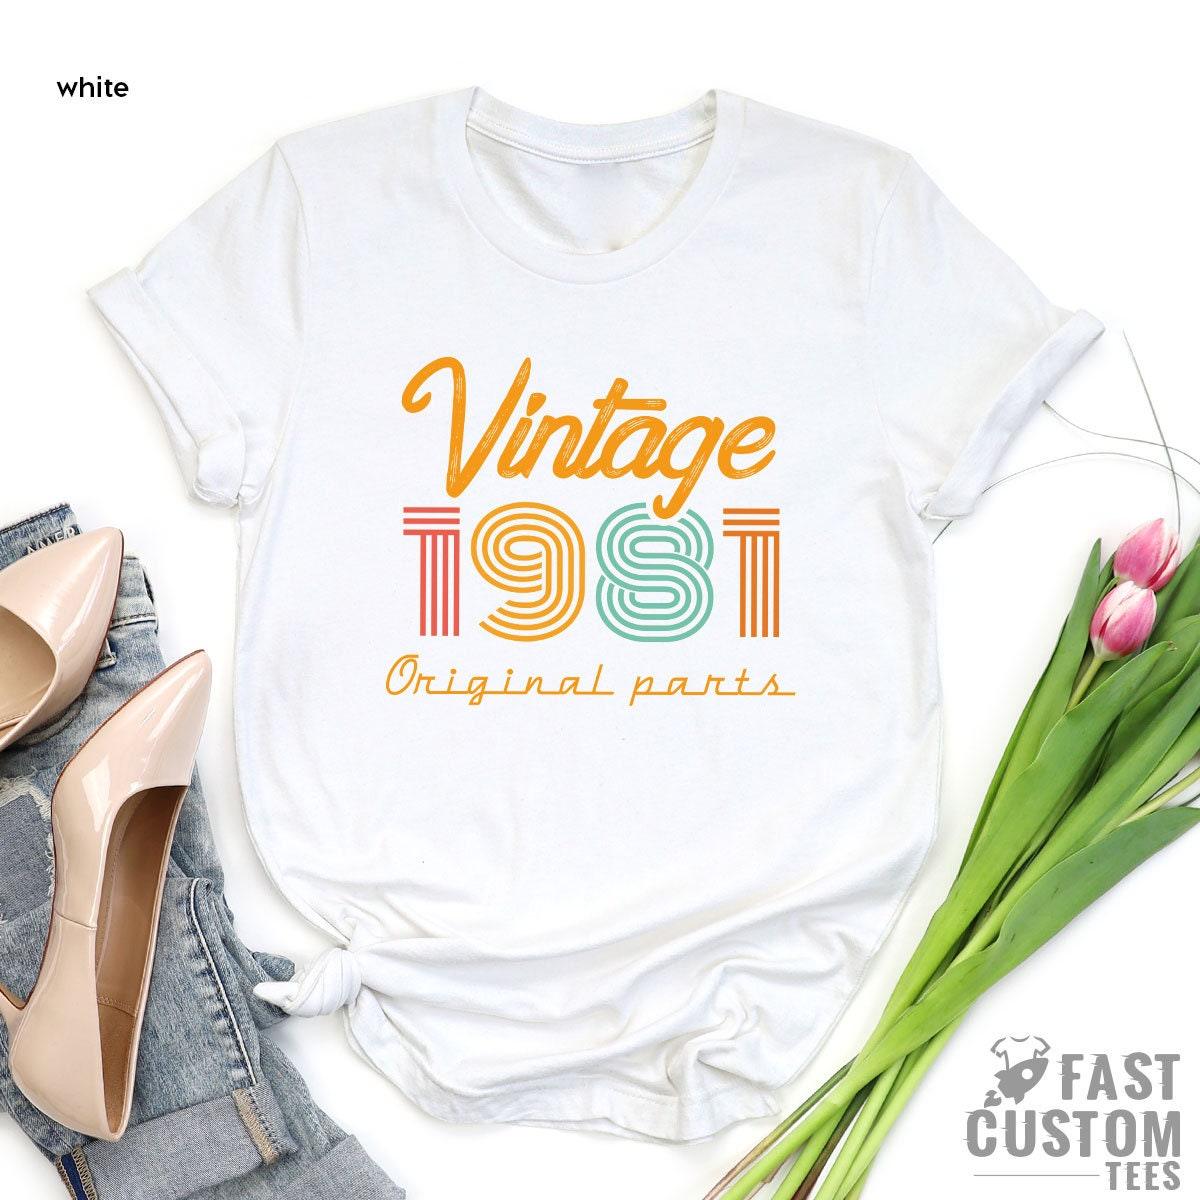 40th Birthday Shirt, Vintage T Shirt, Vintage 1981 Shirt, 40th Birthday Gift For Women, 40th Birthday Shirt Men, Retro Shirt, Vintage Shirts - Fastdeliverytees.com